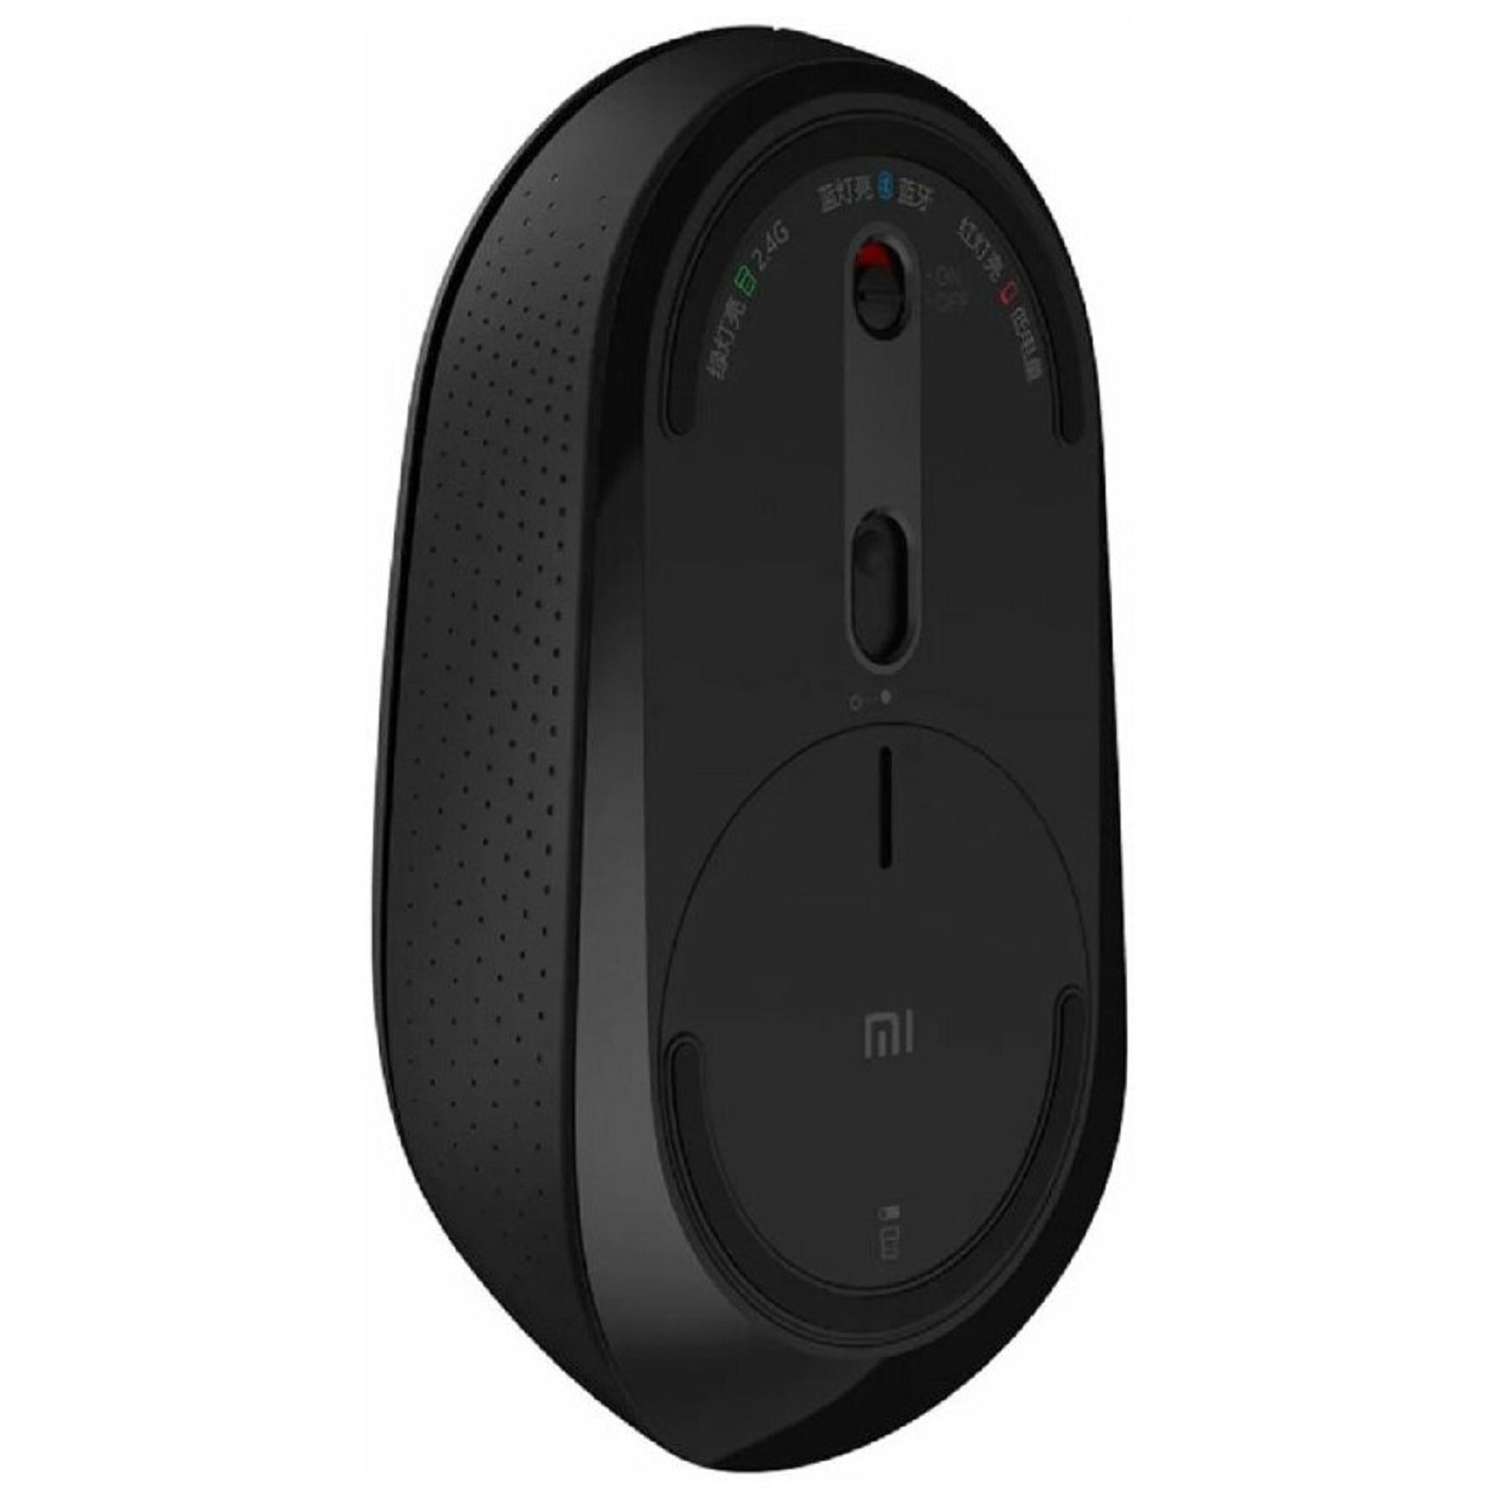 Мышь XIAOMI Mi Dual Mode Wireless Mouse Silent Edition беспроводная 1300 dpi usb чёрная - фото 3